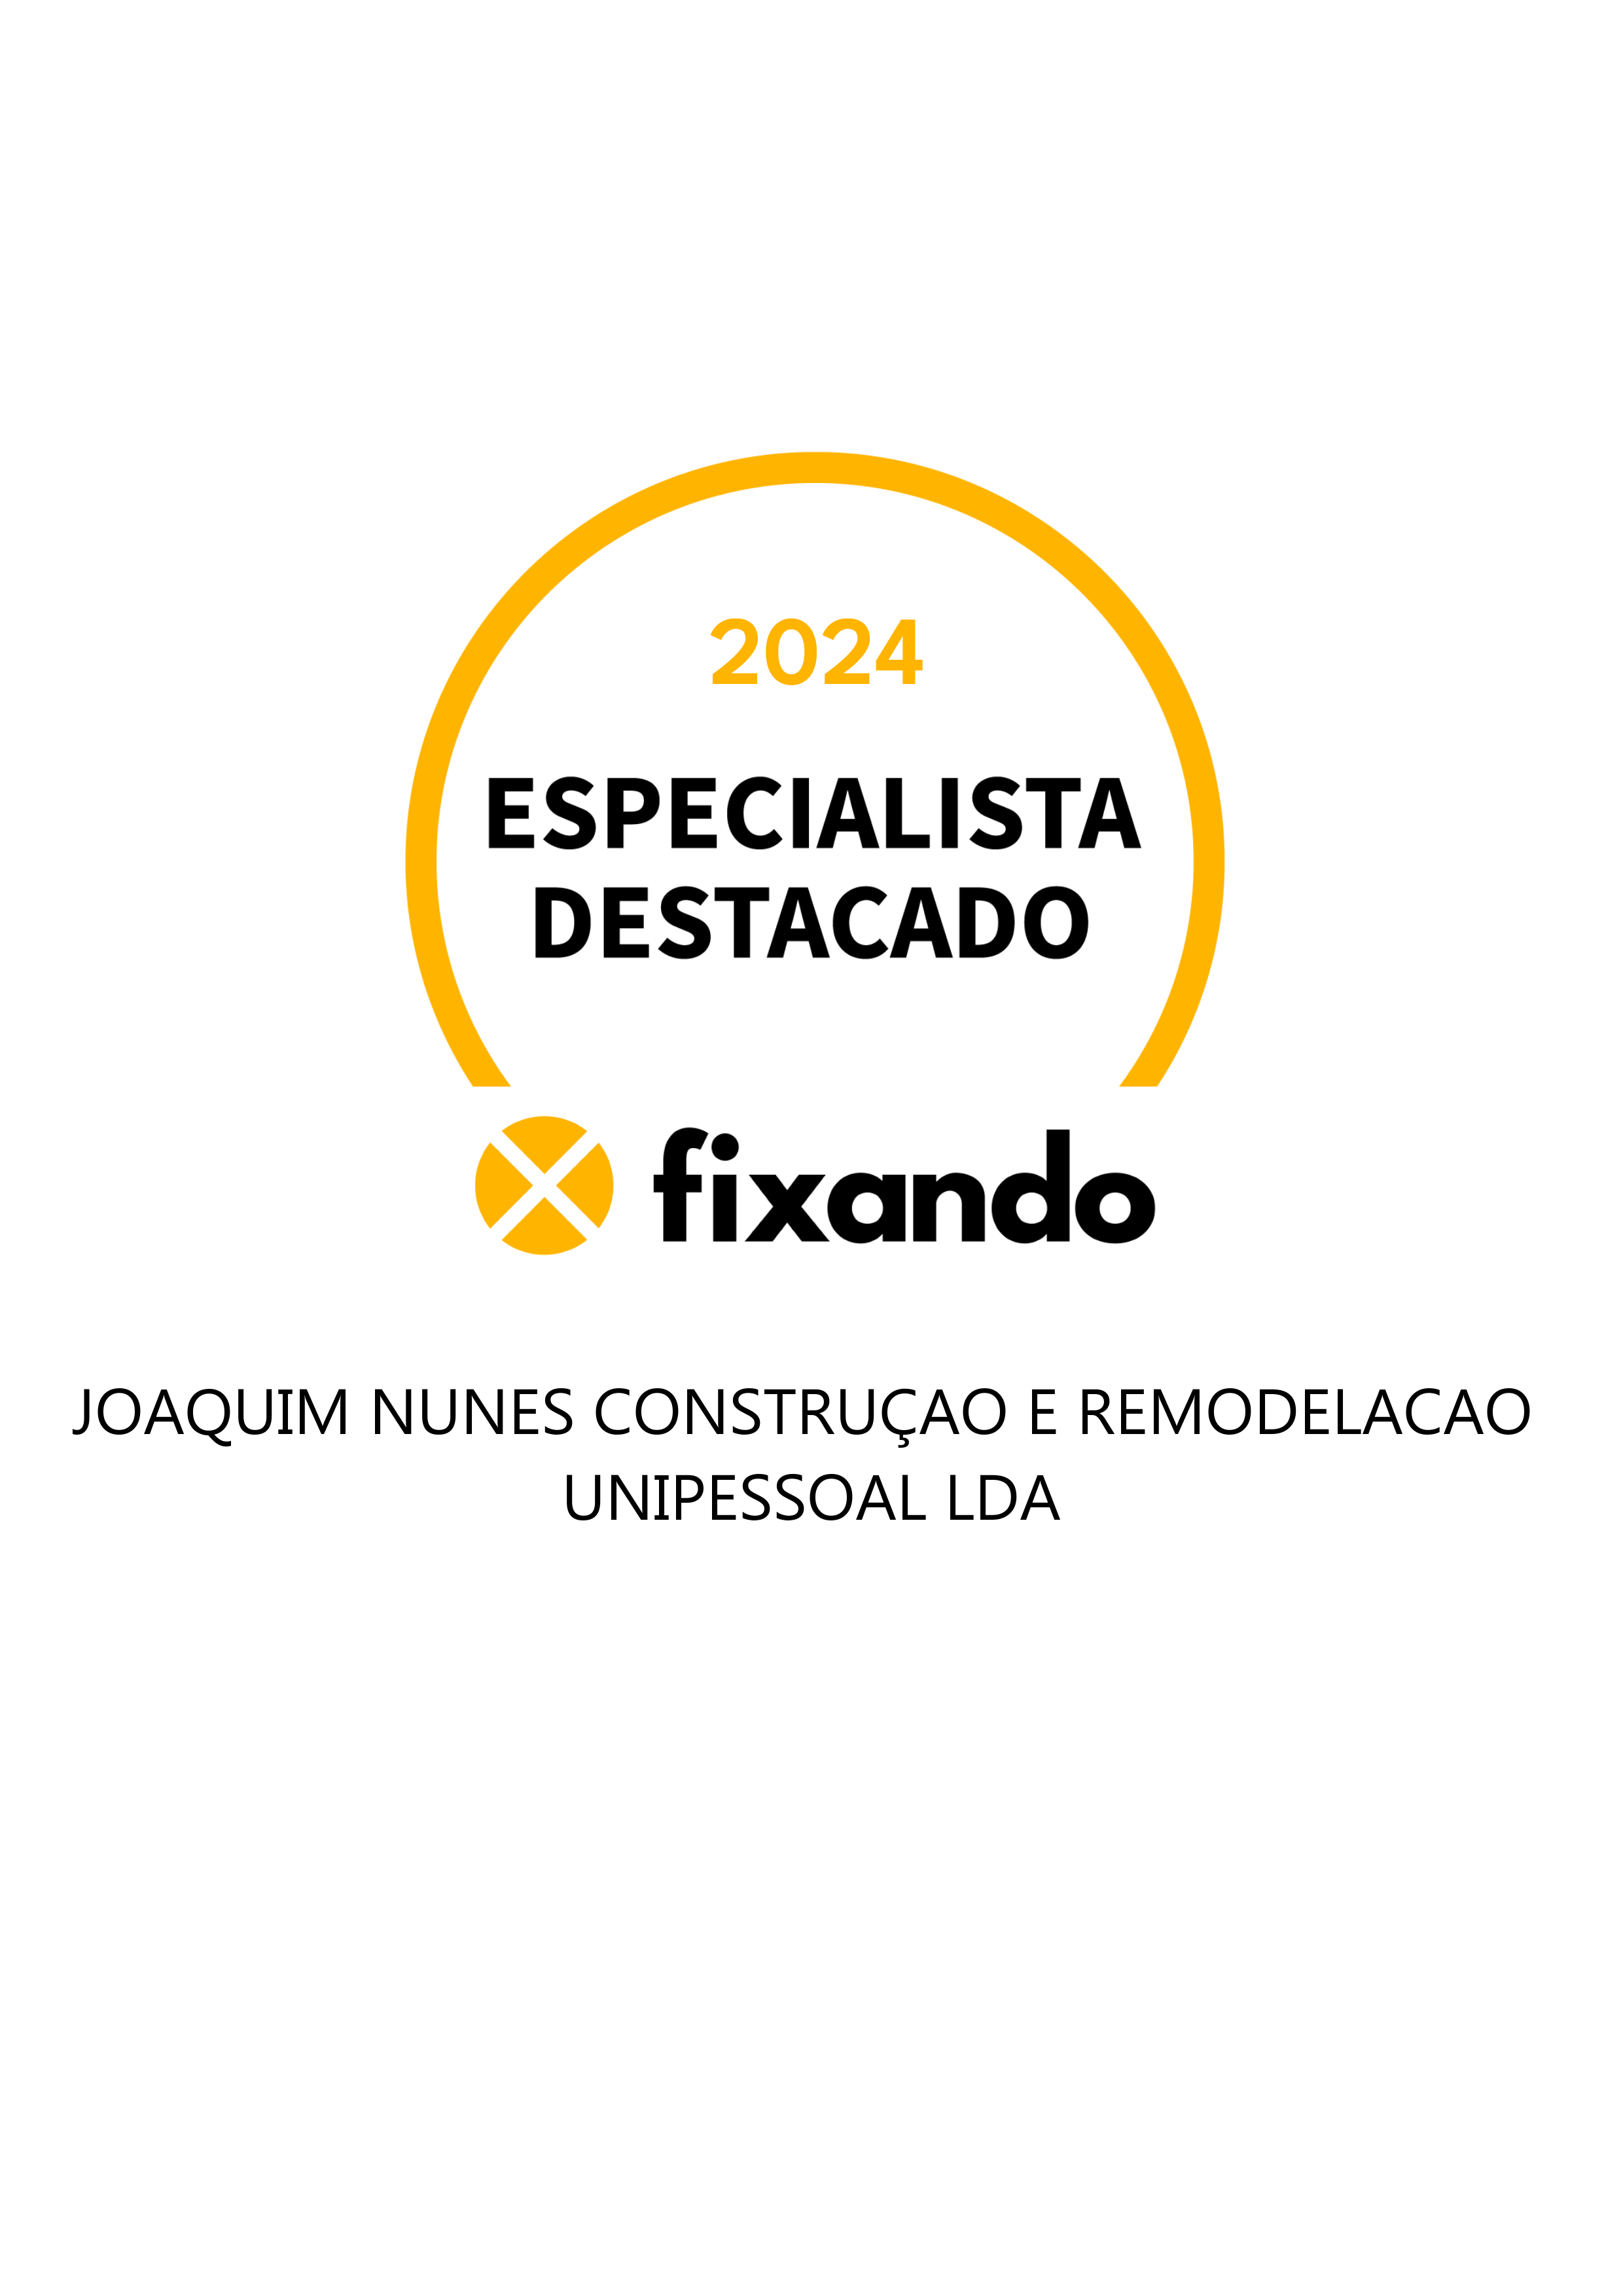 Joaquim Nunes construçao e remodelacao  unipessoal lda - Santarém - Instalação de Pavimento em Pedra ou Ladrilho